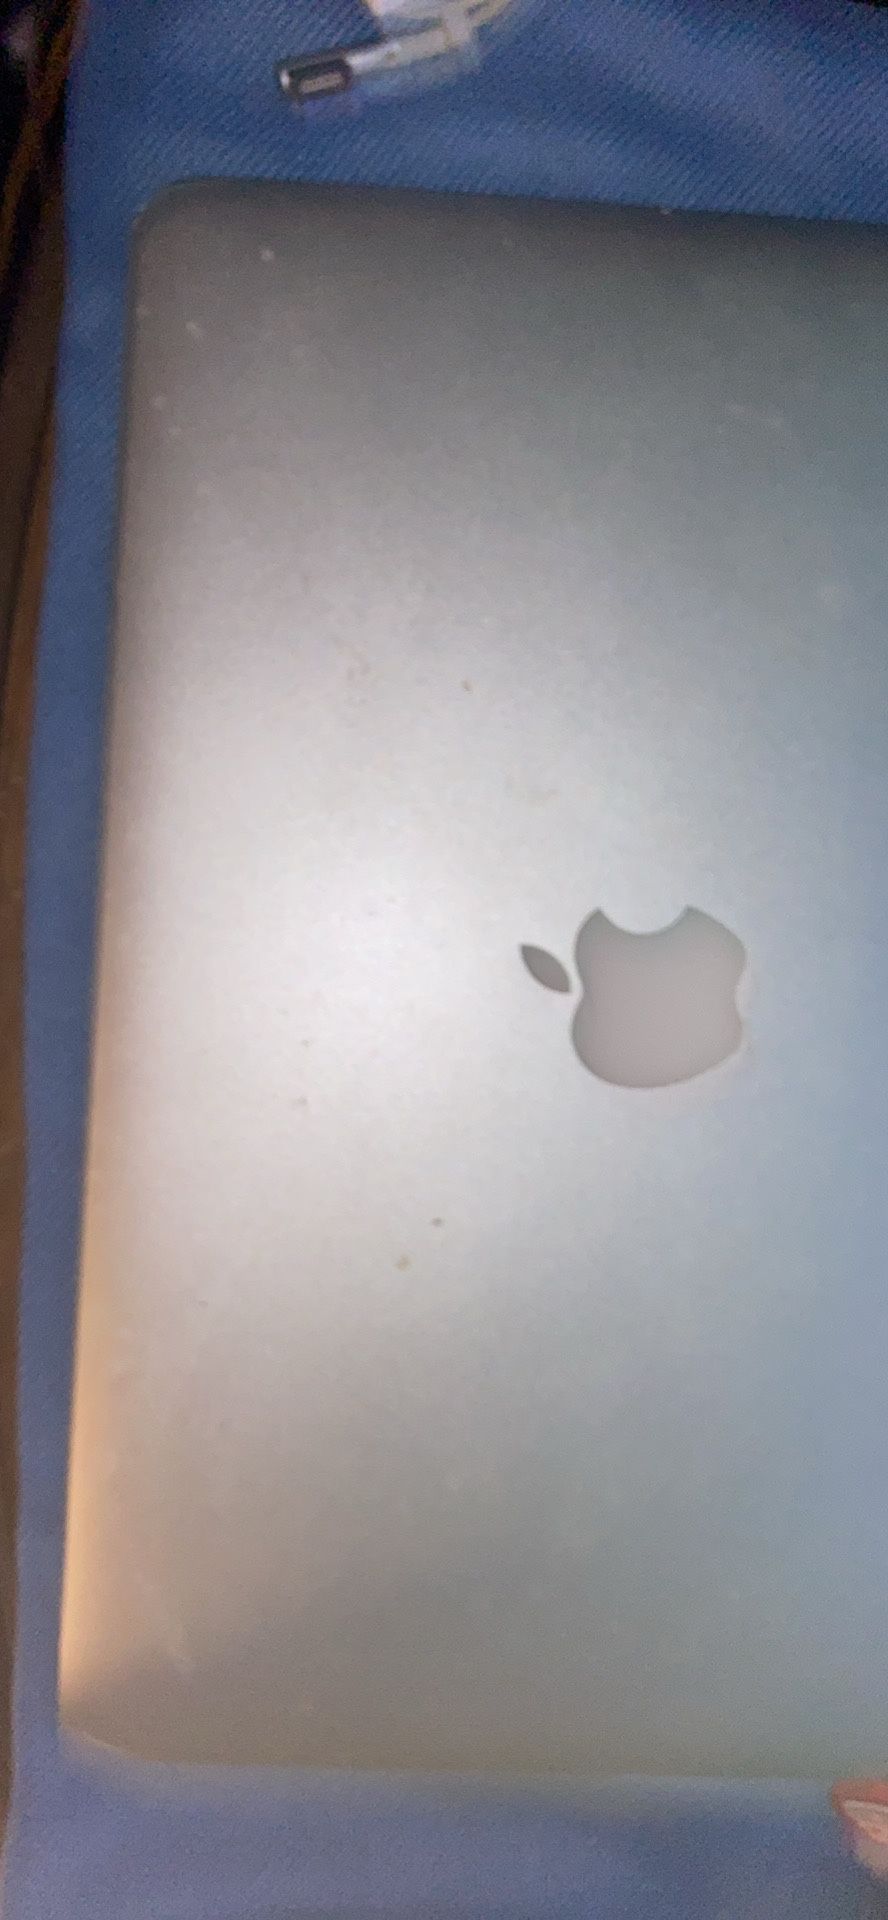 Apple MacBook Air A1369 13" Laptop - MC965LL/A